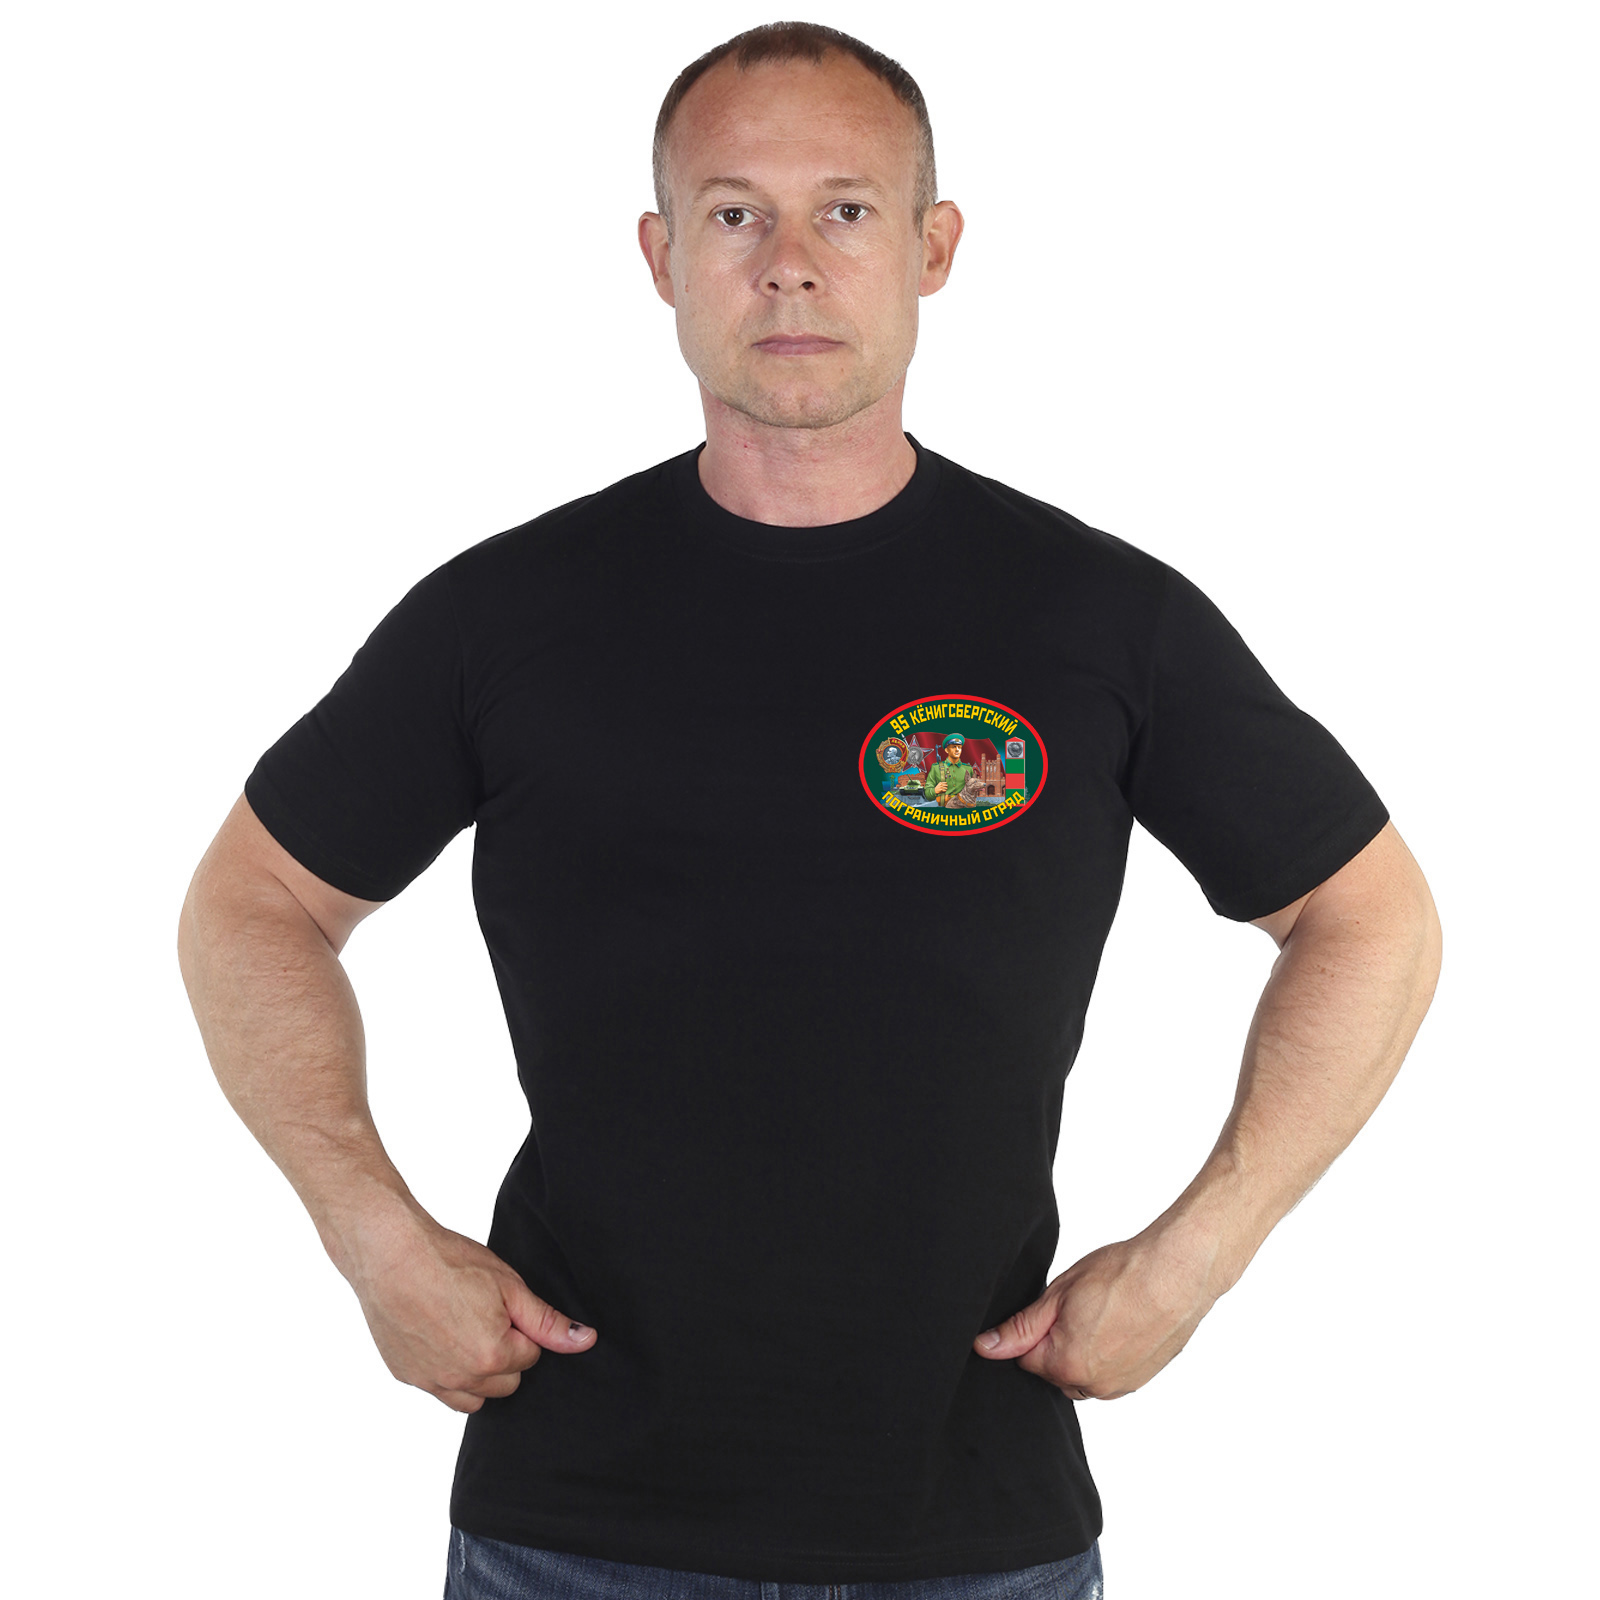 Купить футболку 95 Кенигсбергский пограничный отряд